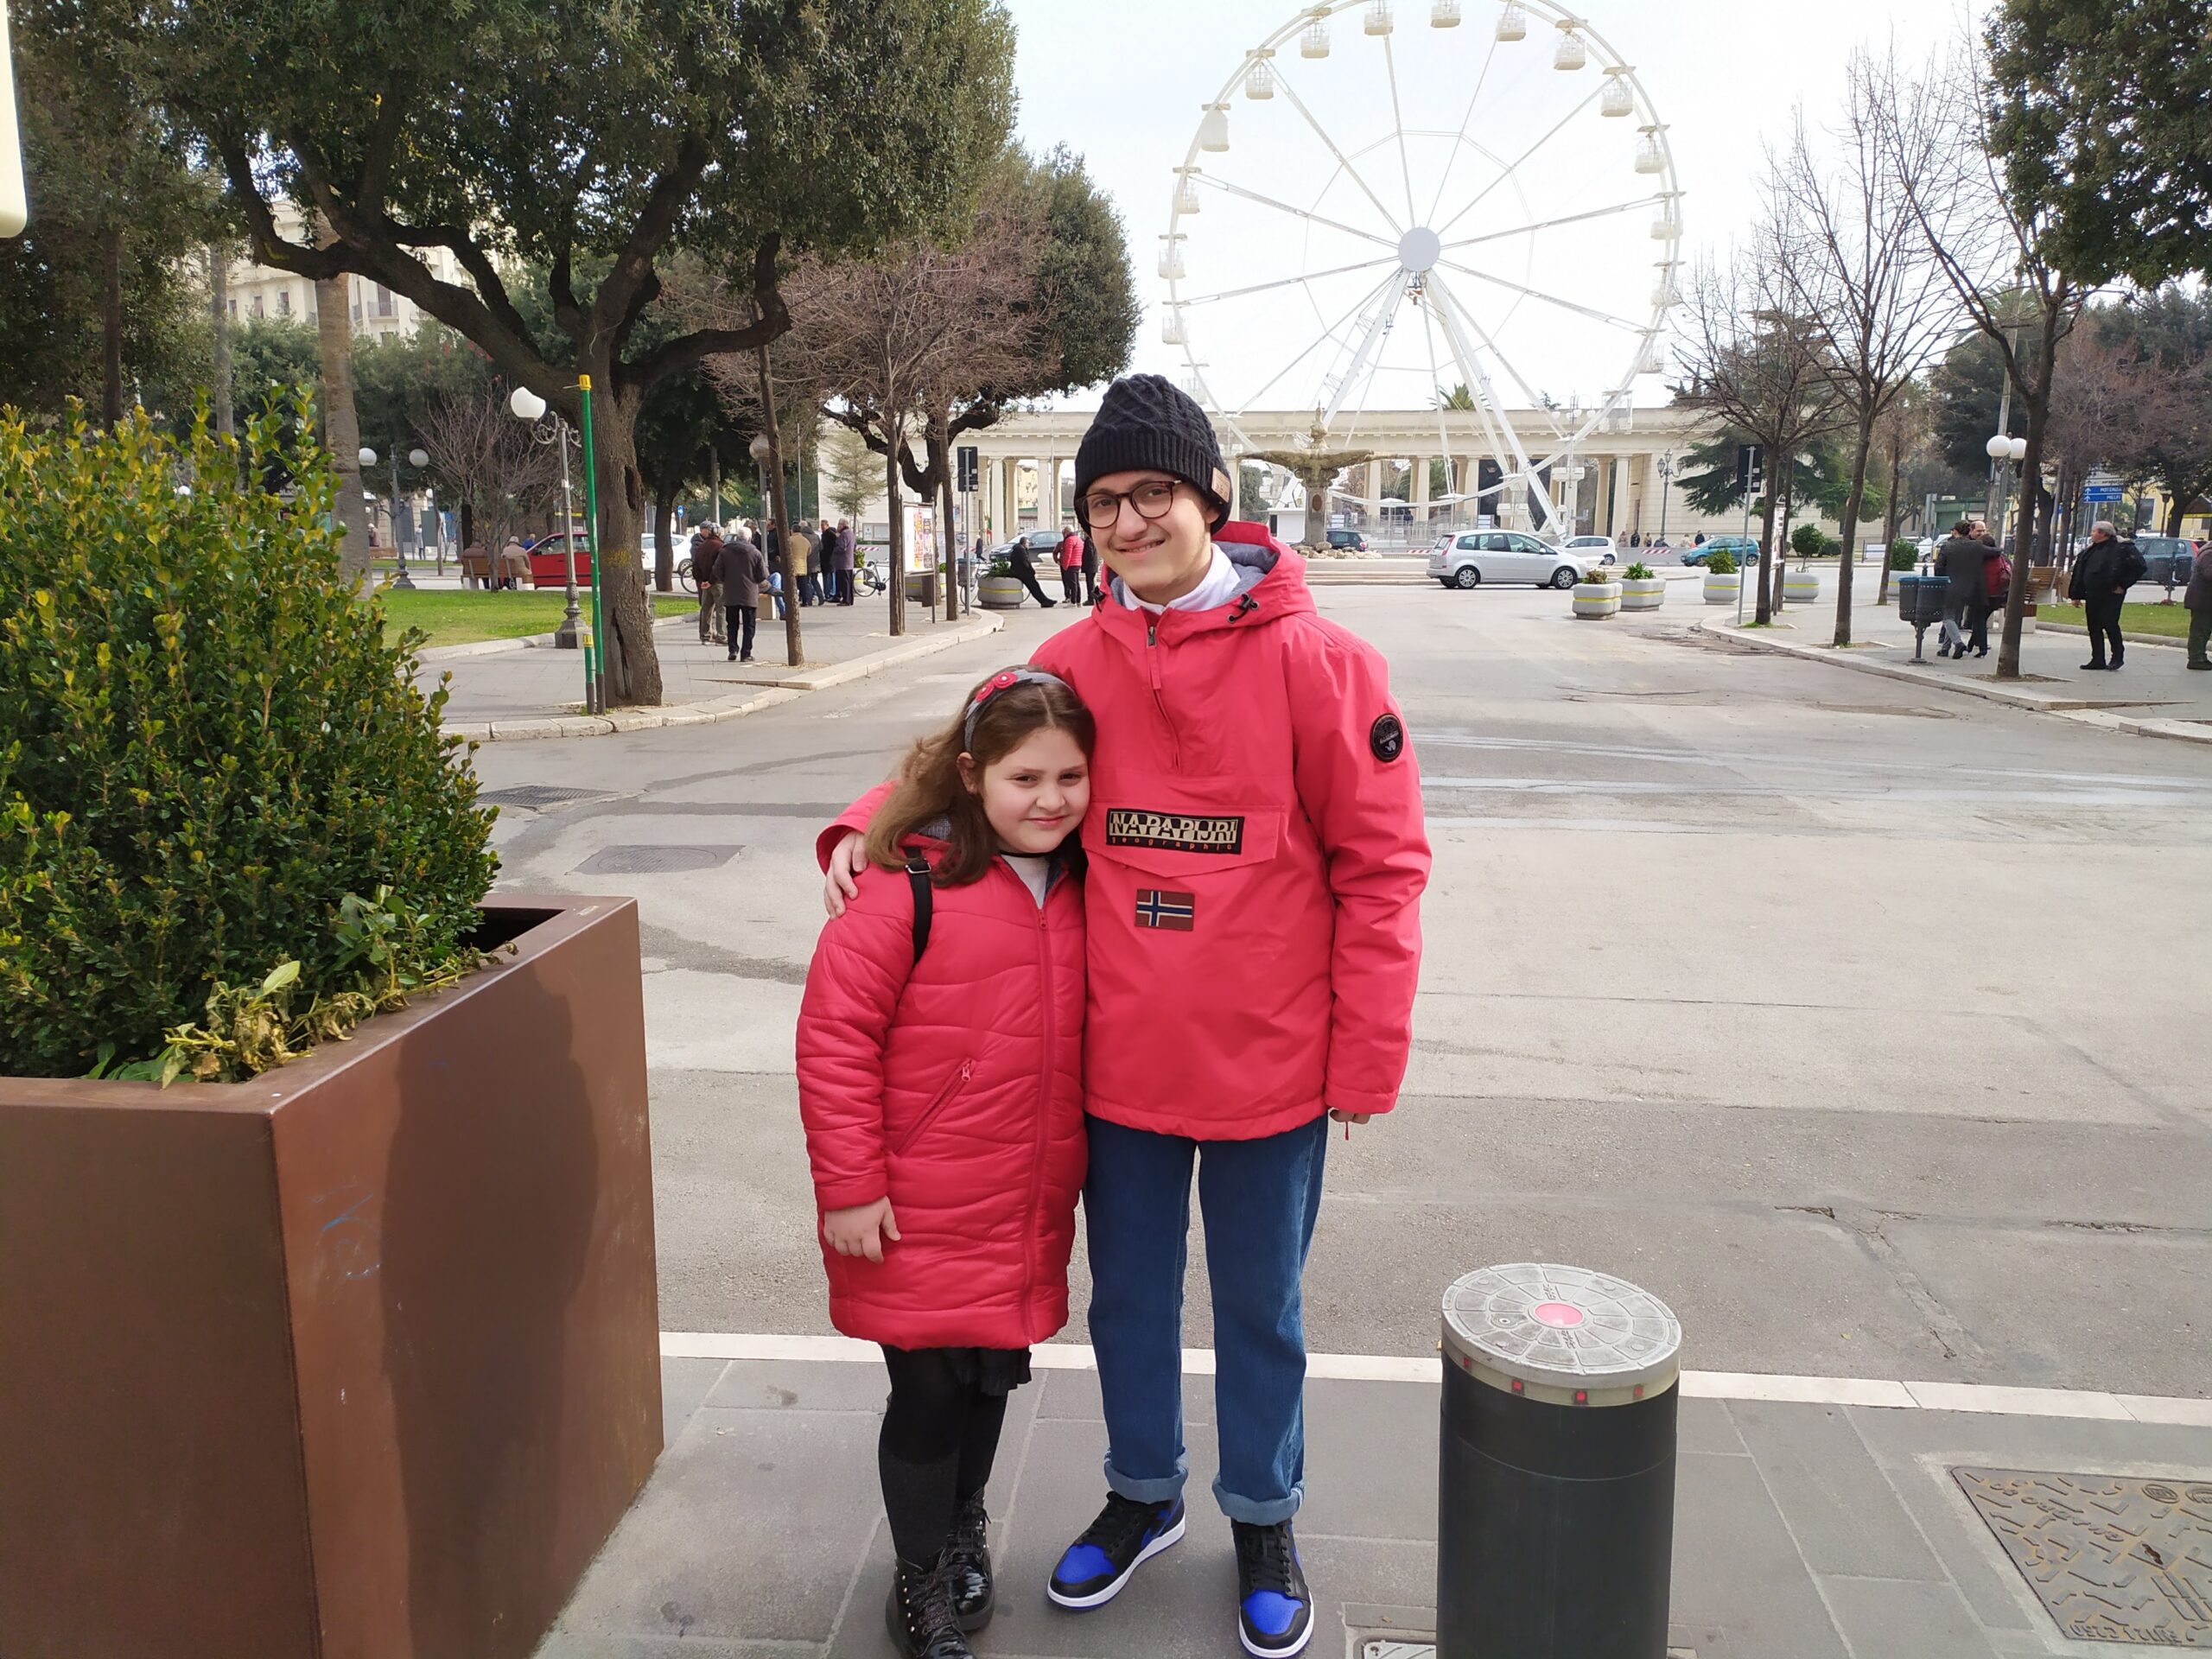 Eugenio and Francesca near the Ferris wheel in Foggia